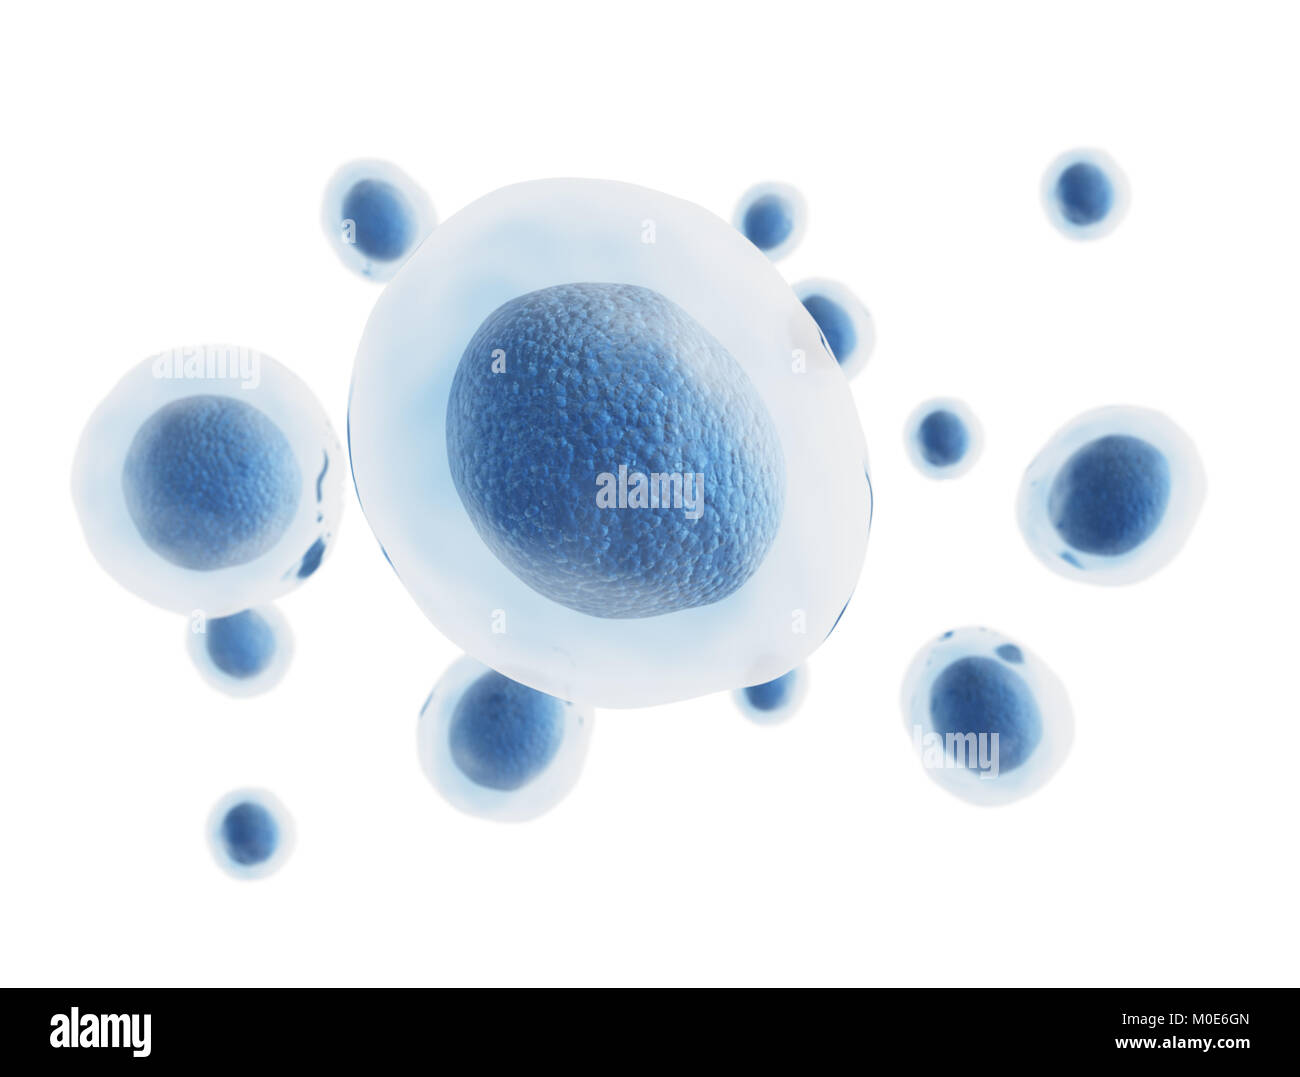 Illustration en rendu 3D de cellules humaines isolées sur fond blanc Banque D'Images